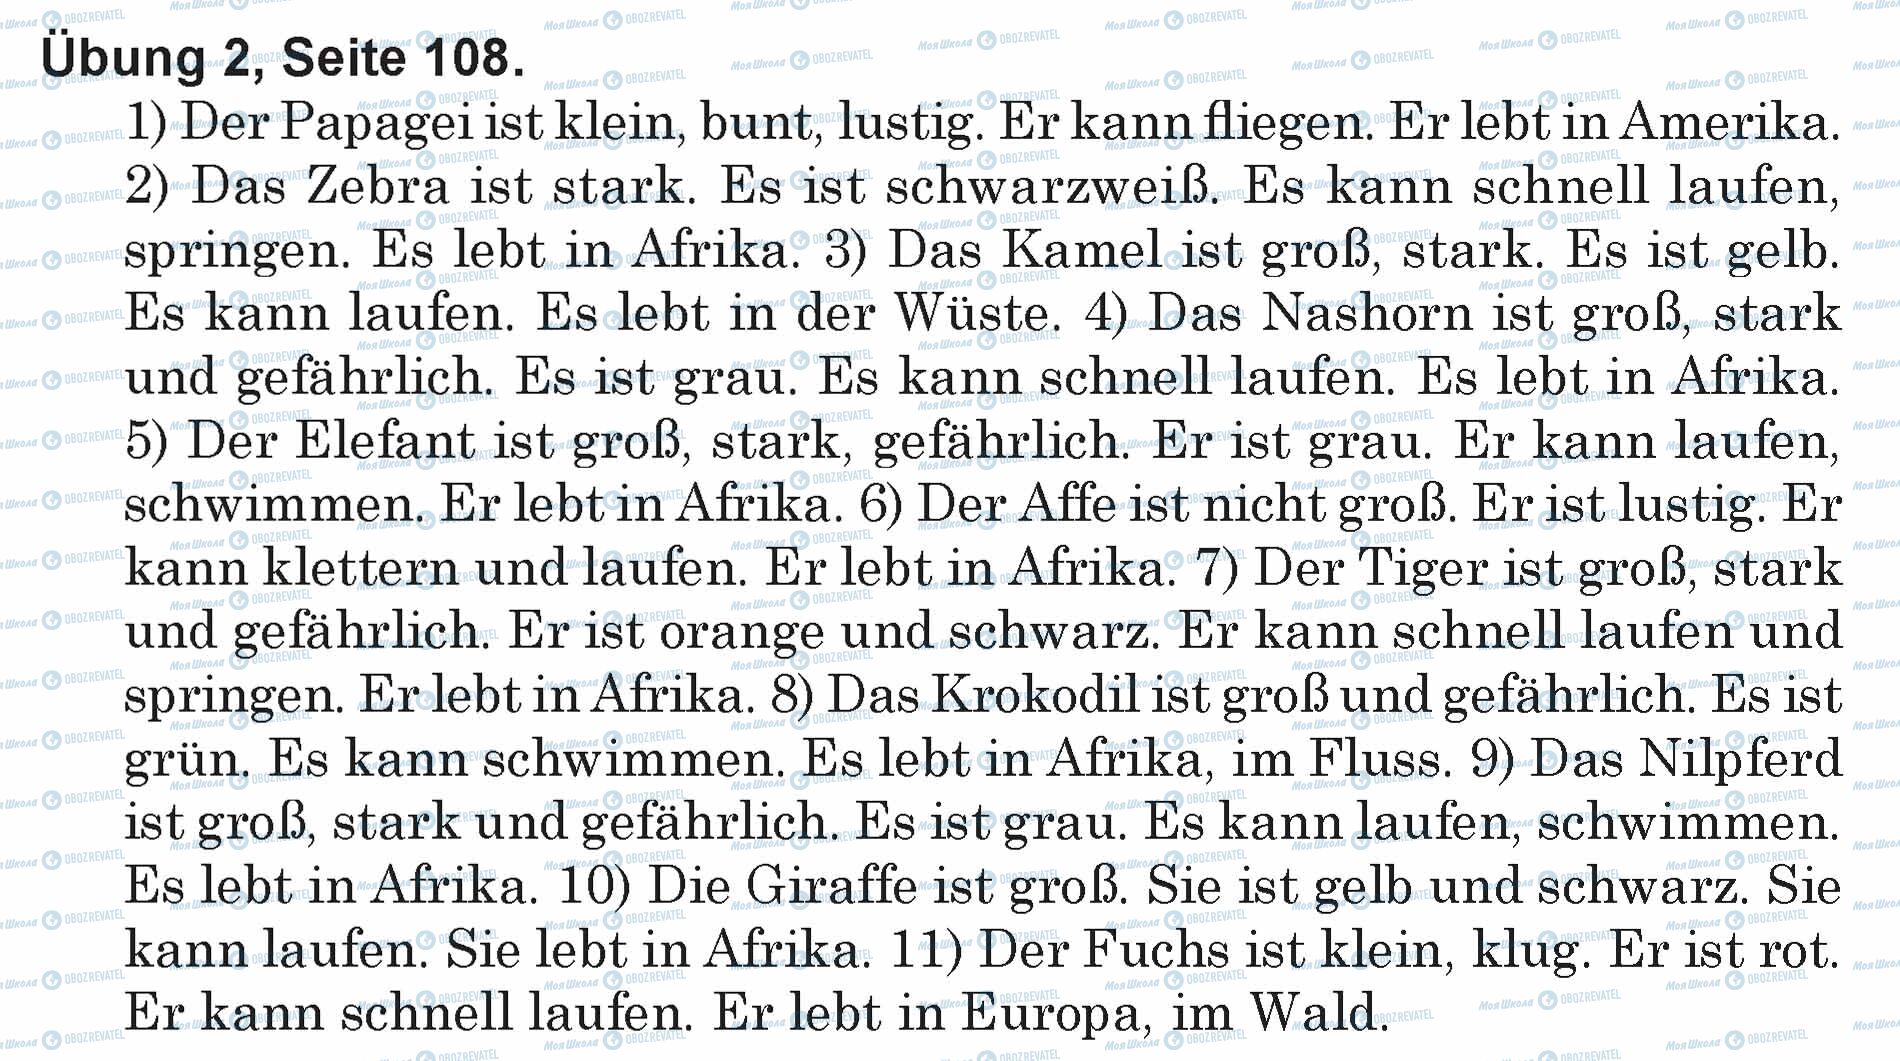 ГДЗ Немецкий язык 5 класс страница Ubung 2, Seite 108